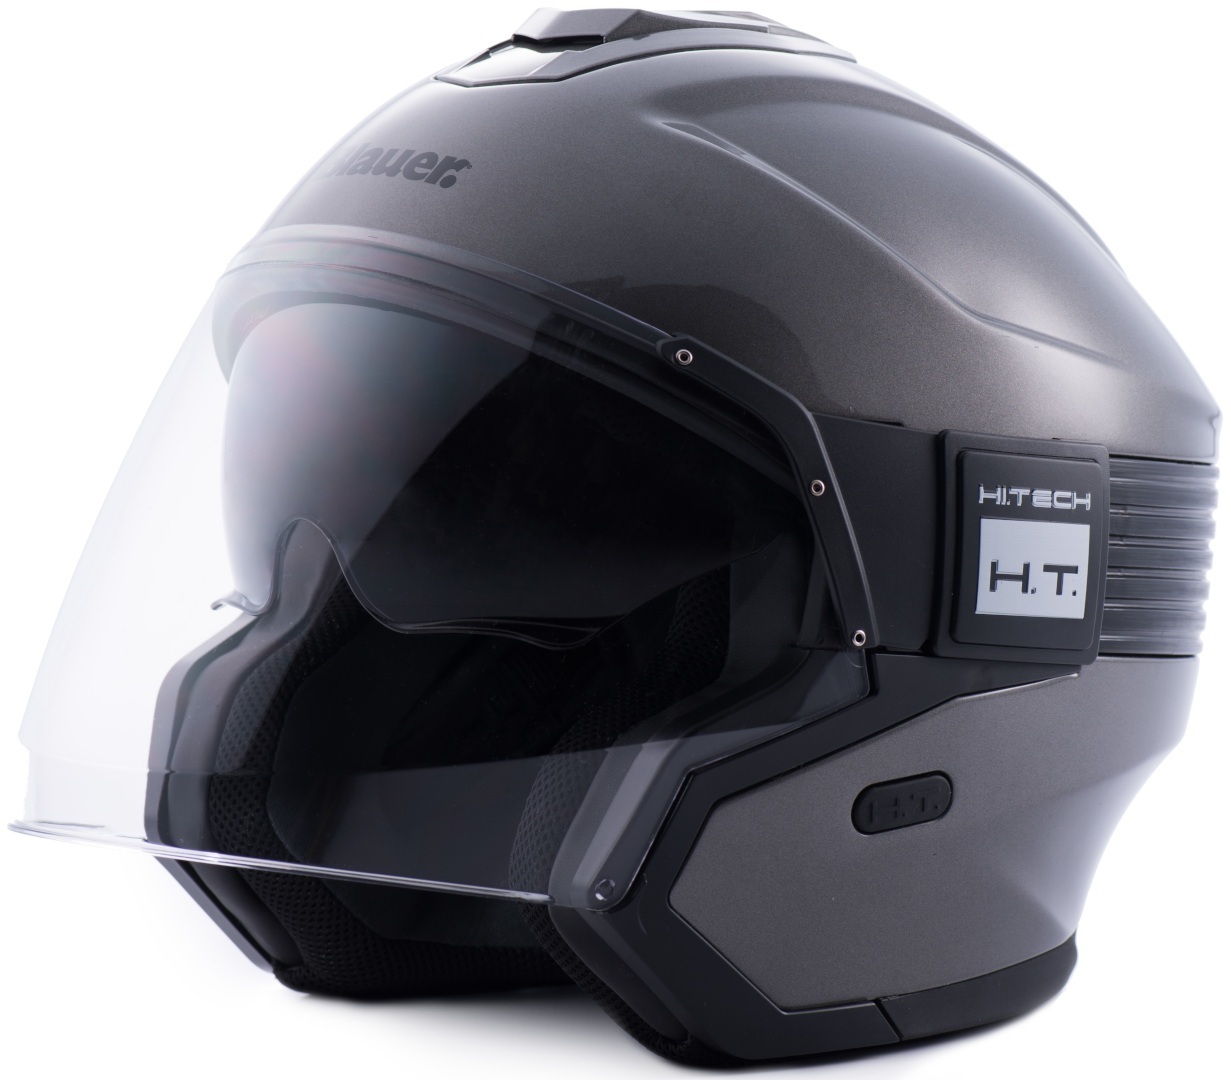 Реактивный шлем Blauer Hacker со съемной подкладкой, серый/черный 77 2 5 реактивный шлем ixs черный матовый серый